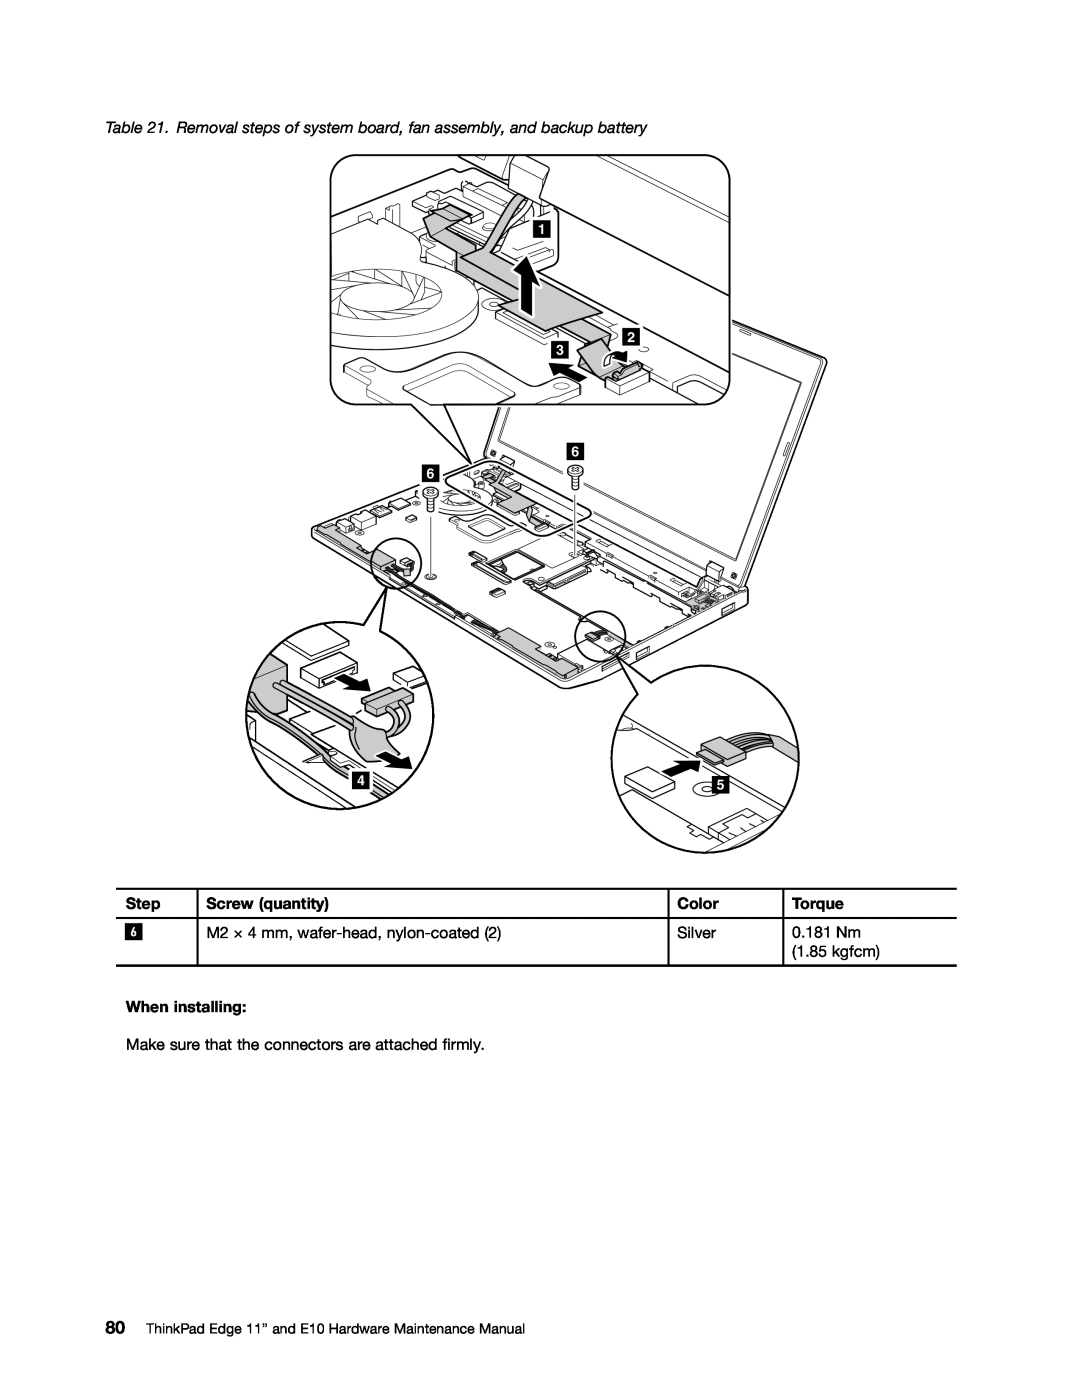 Lenovo E10 manual Step, Screw quantity, Color, Torque, When installing, kgfcm 